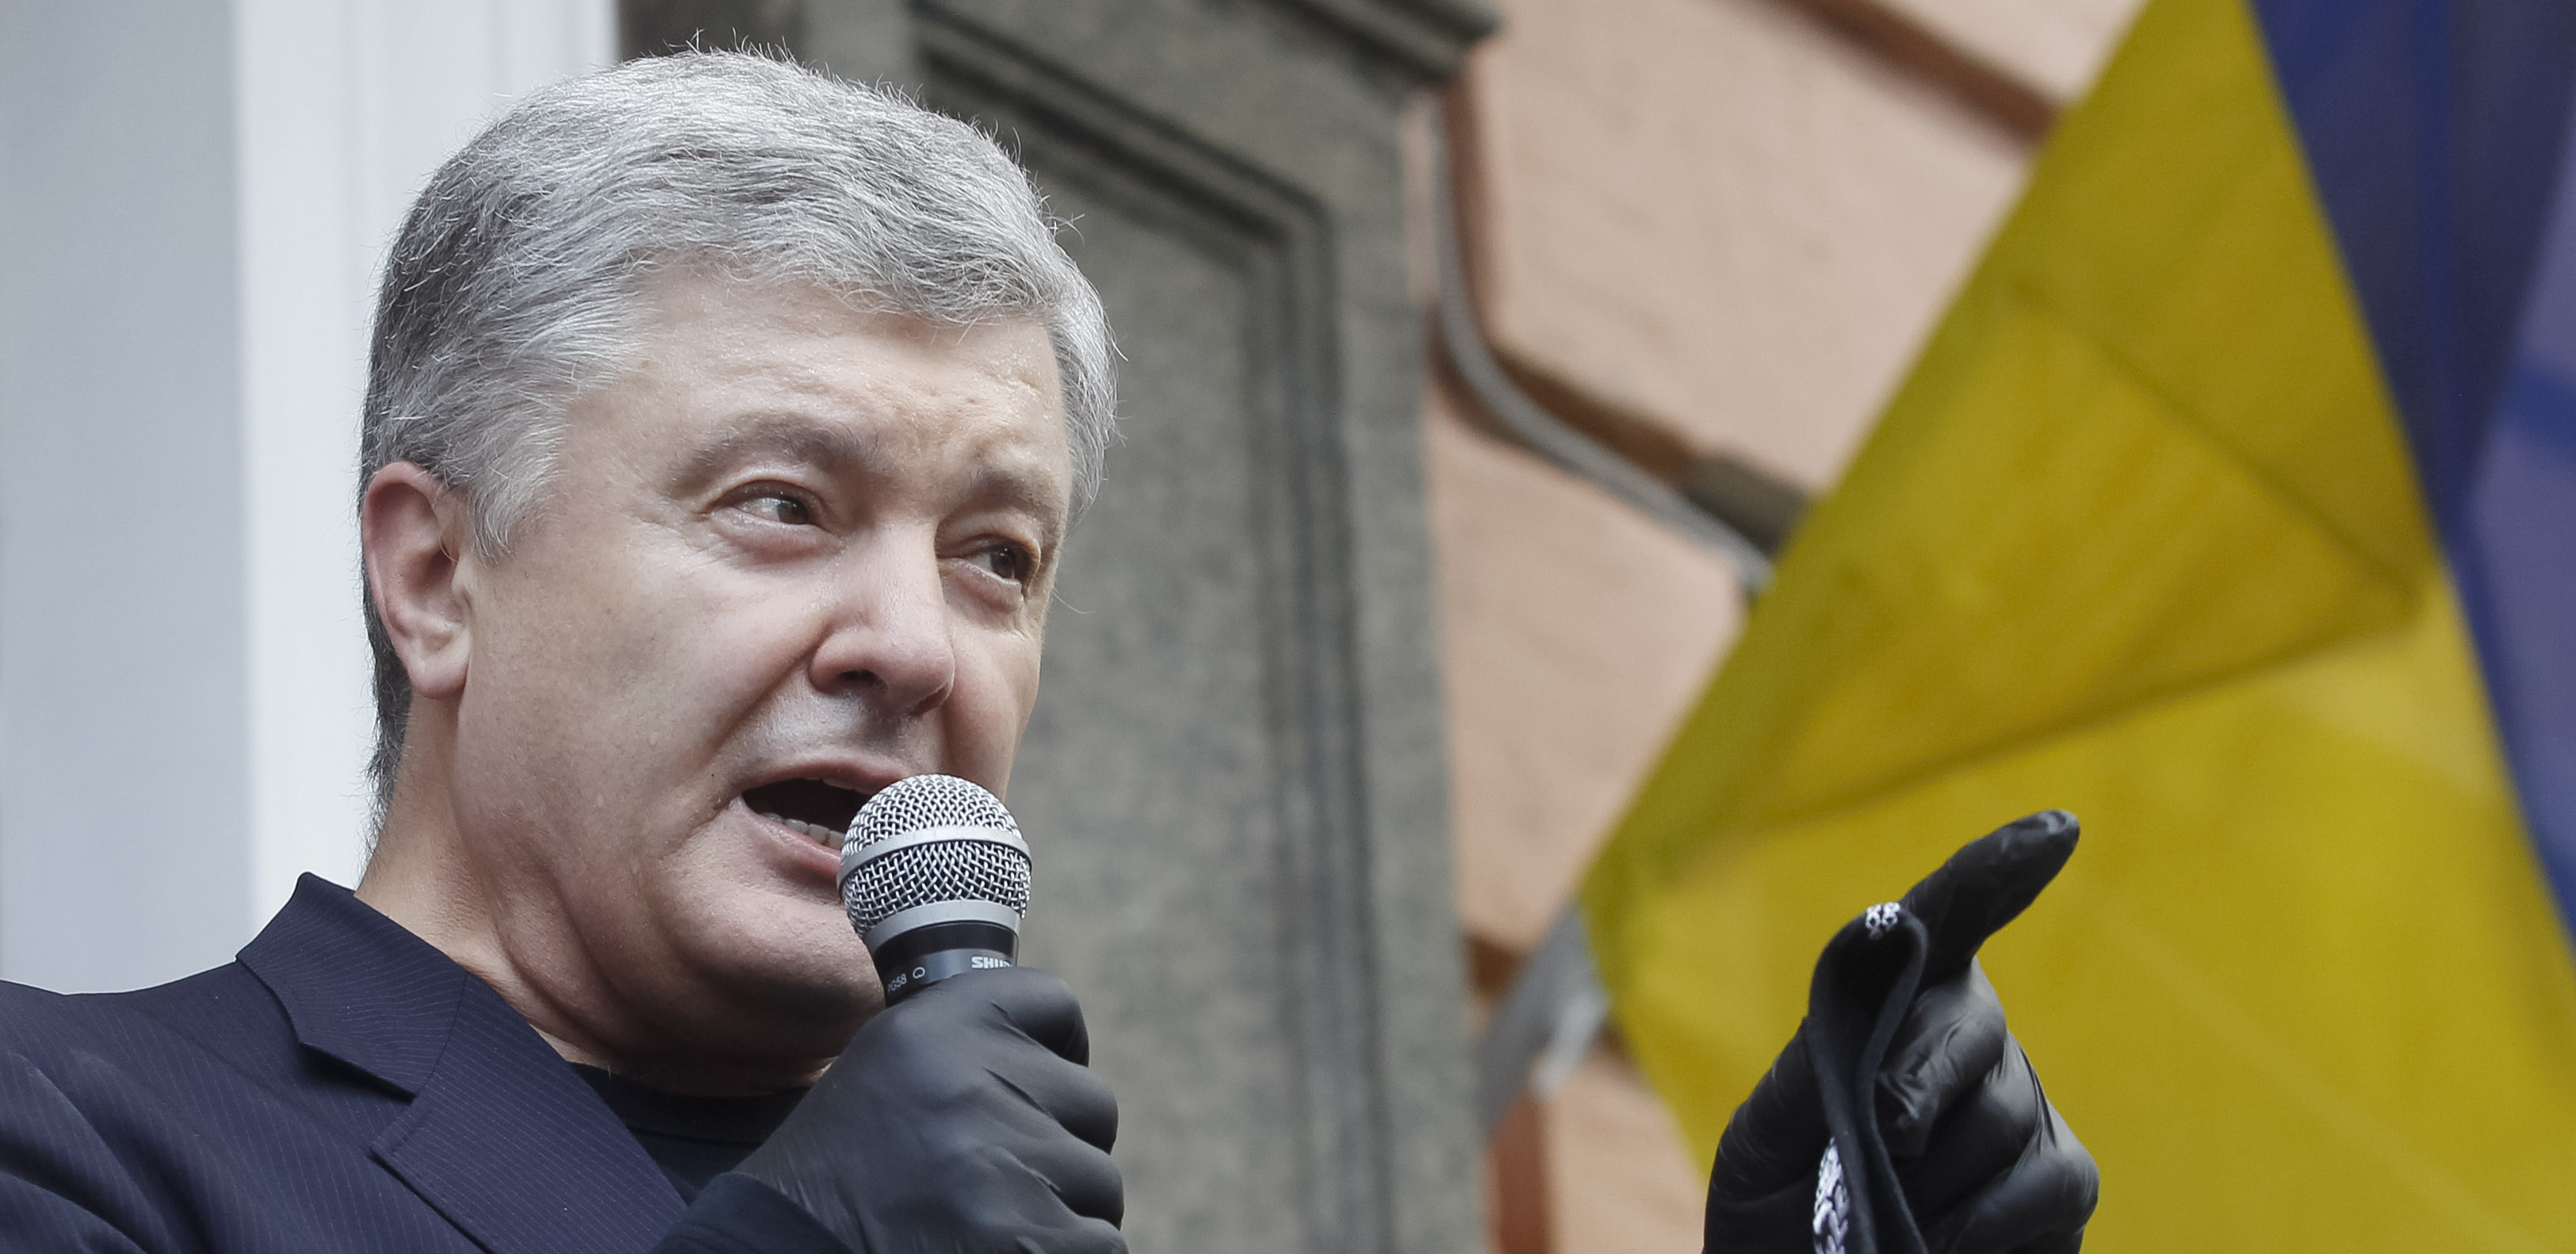 OGLASIO SE BIVŠI PREDSEDNIK UKRAJINE: Porošenko odbacio istragu zbog veleizdaje: "To više nije šala, za to će neko odgovarati"